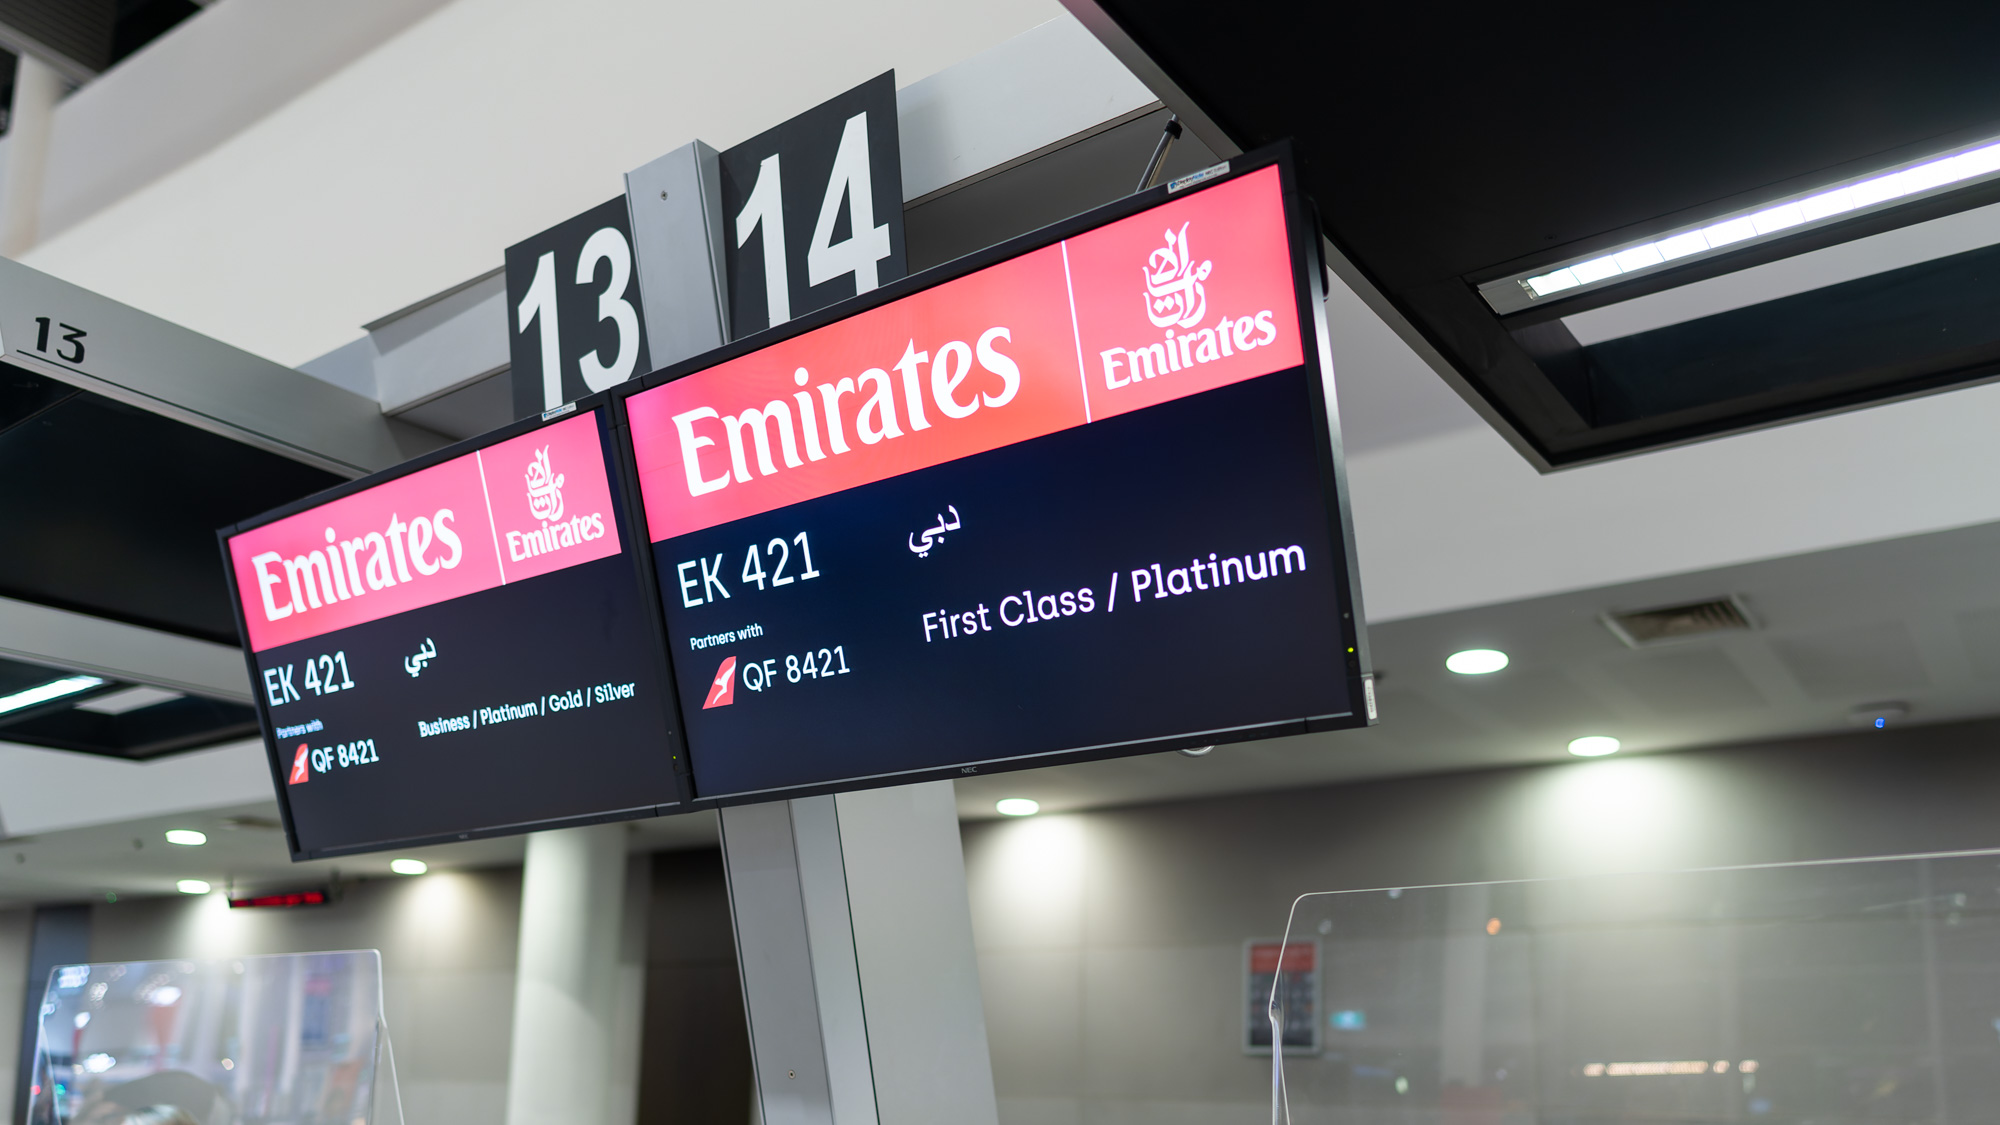 Emirates Perth Check-in counter